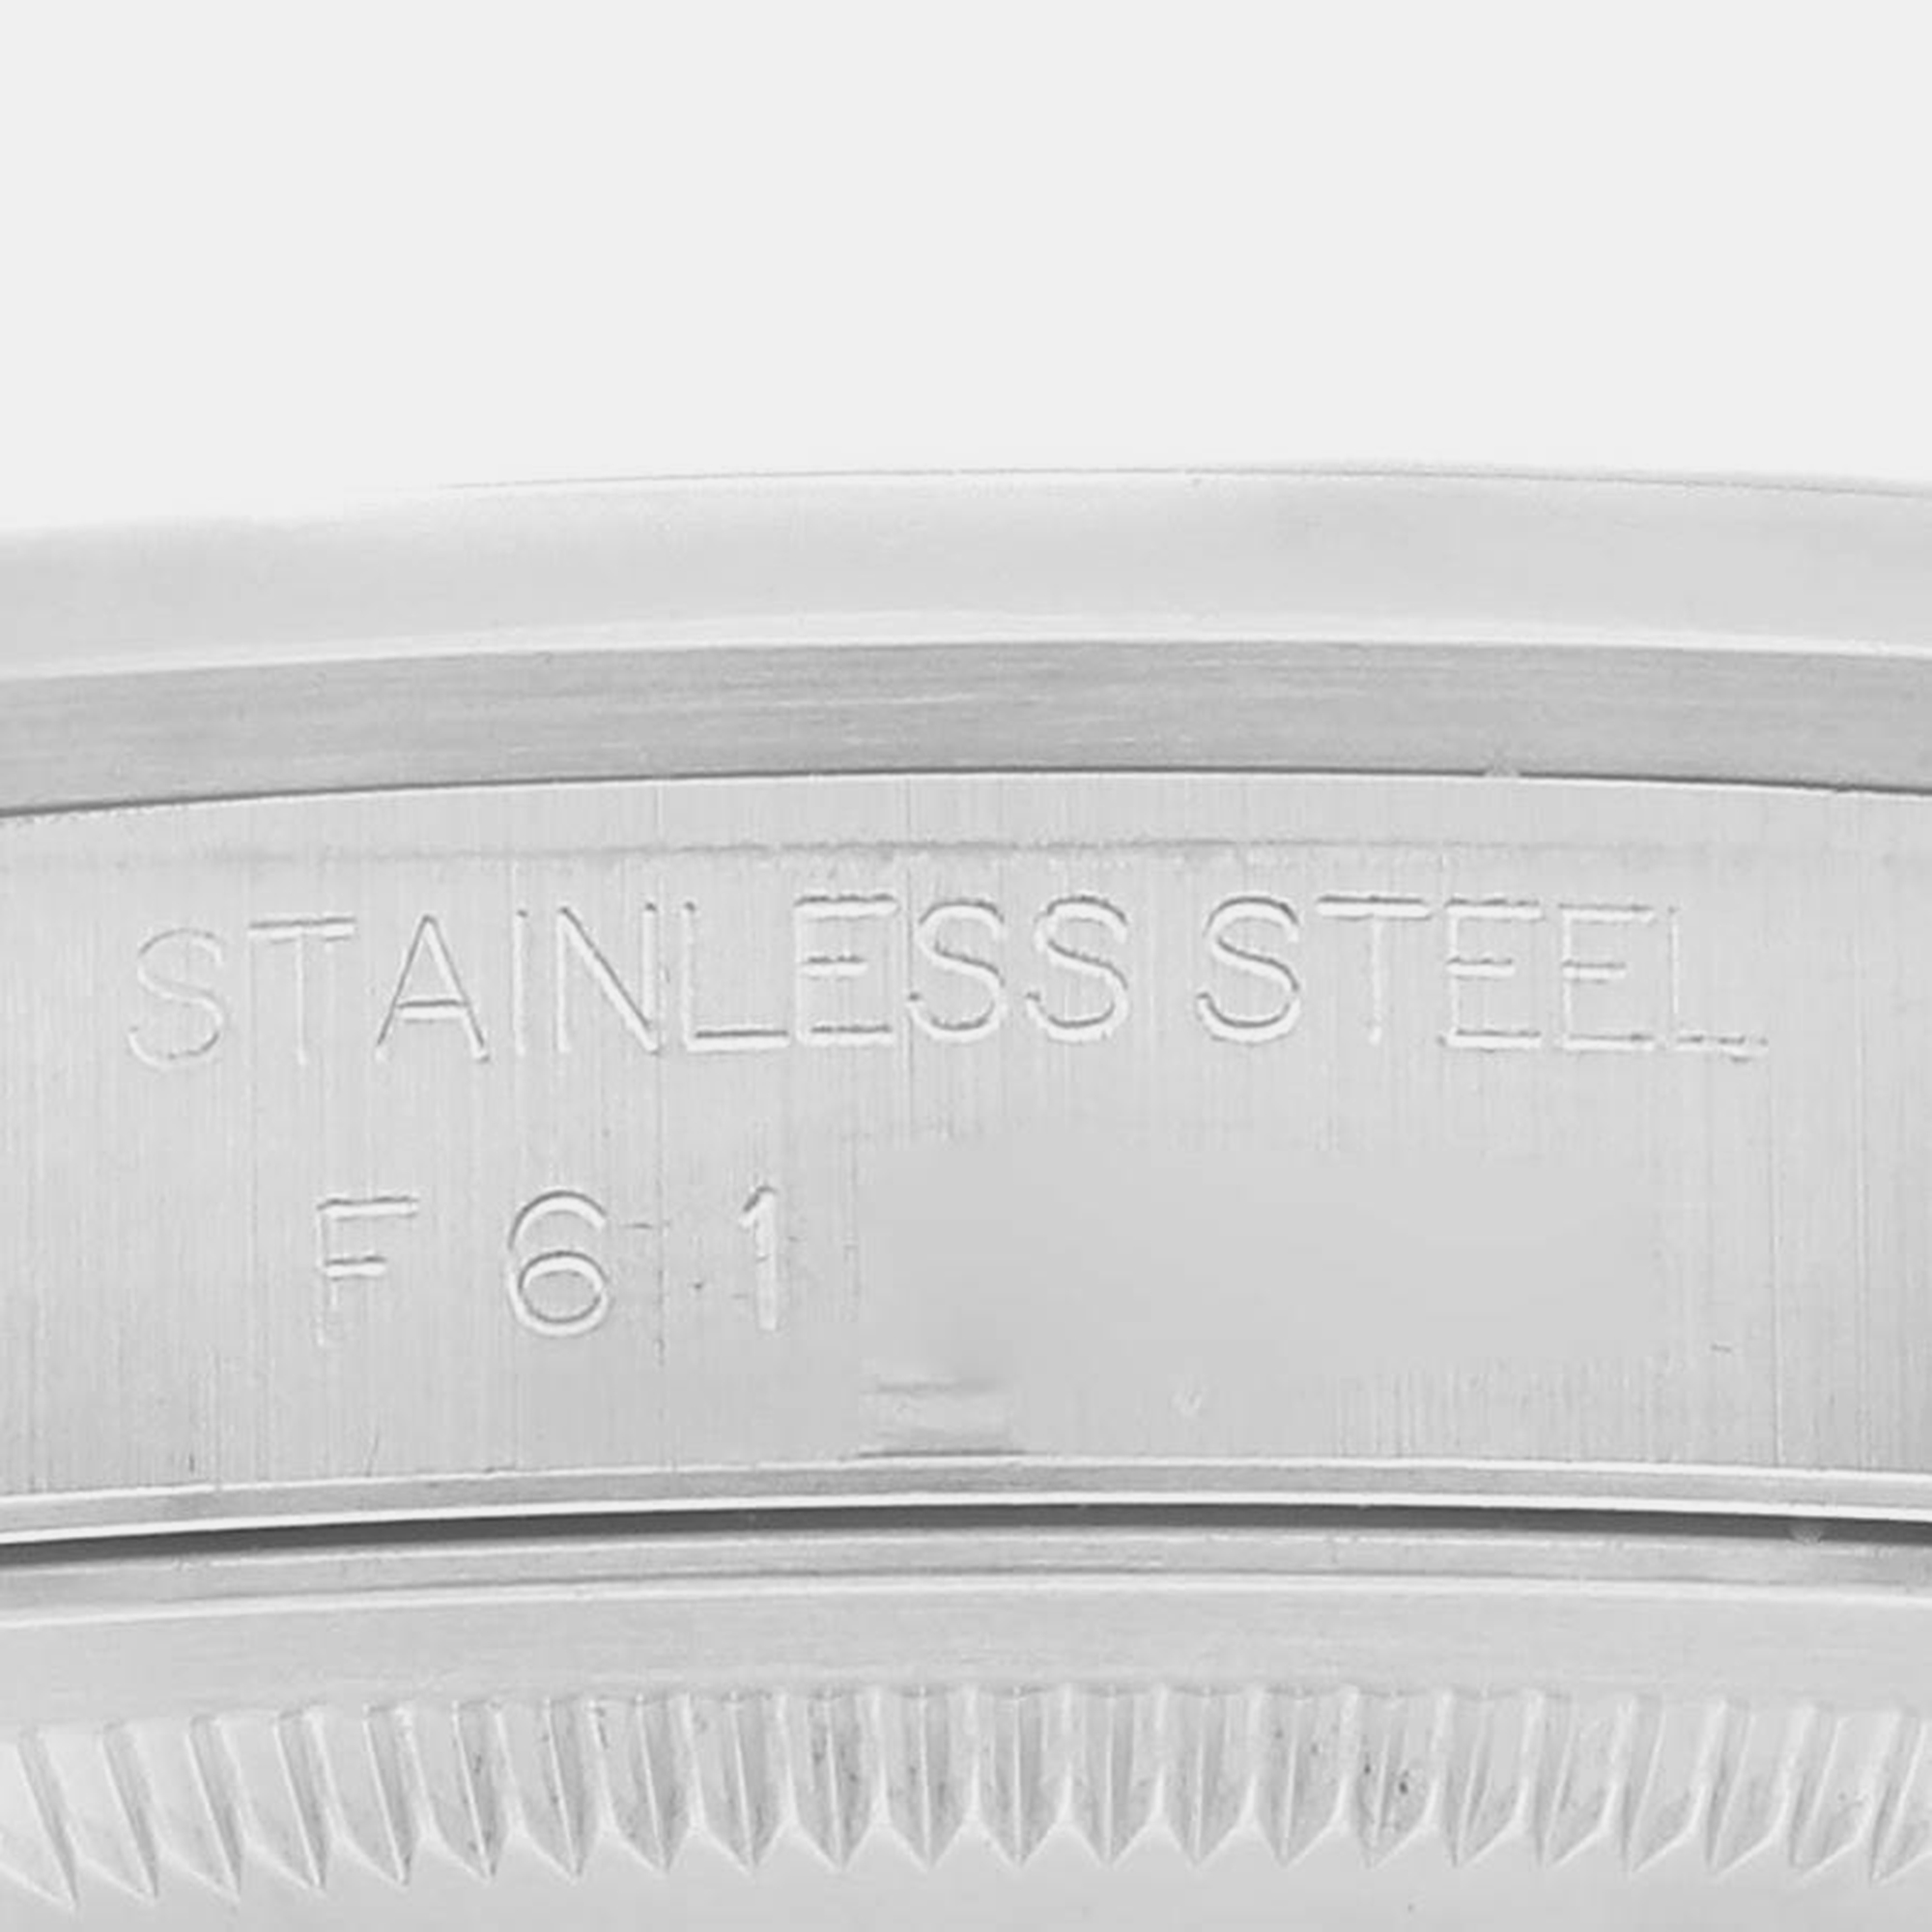 Rolex Datejust White Dial Smooth Bezel Steel Men's Watch 16200 36 Mm